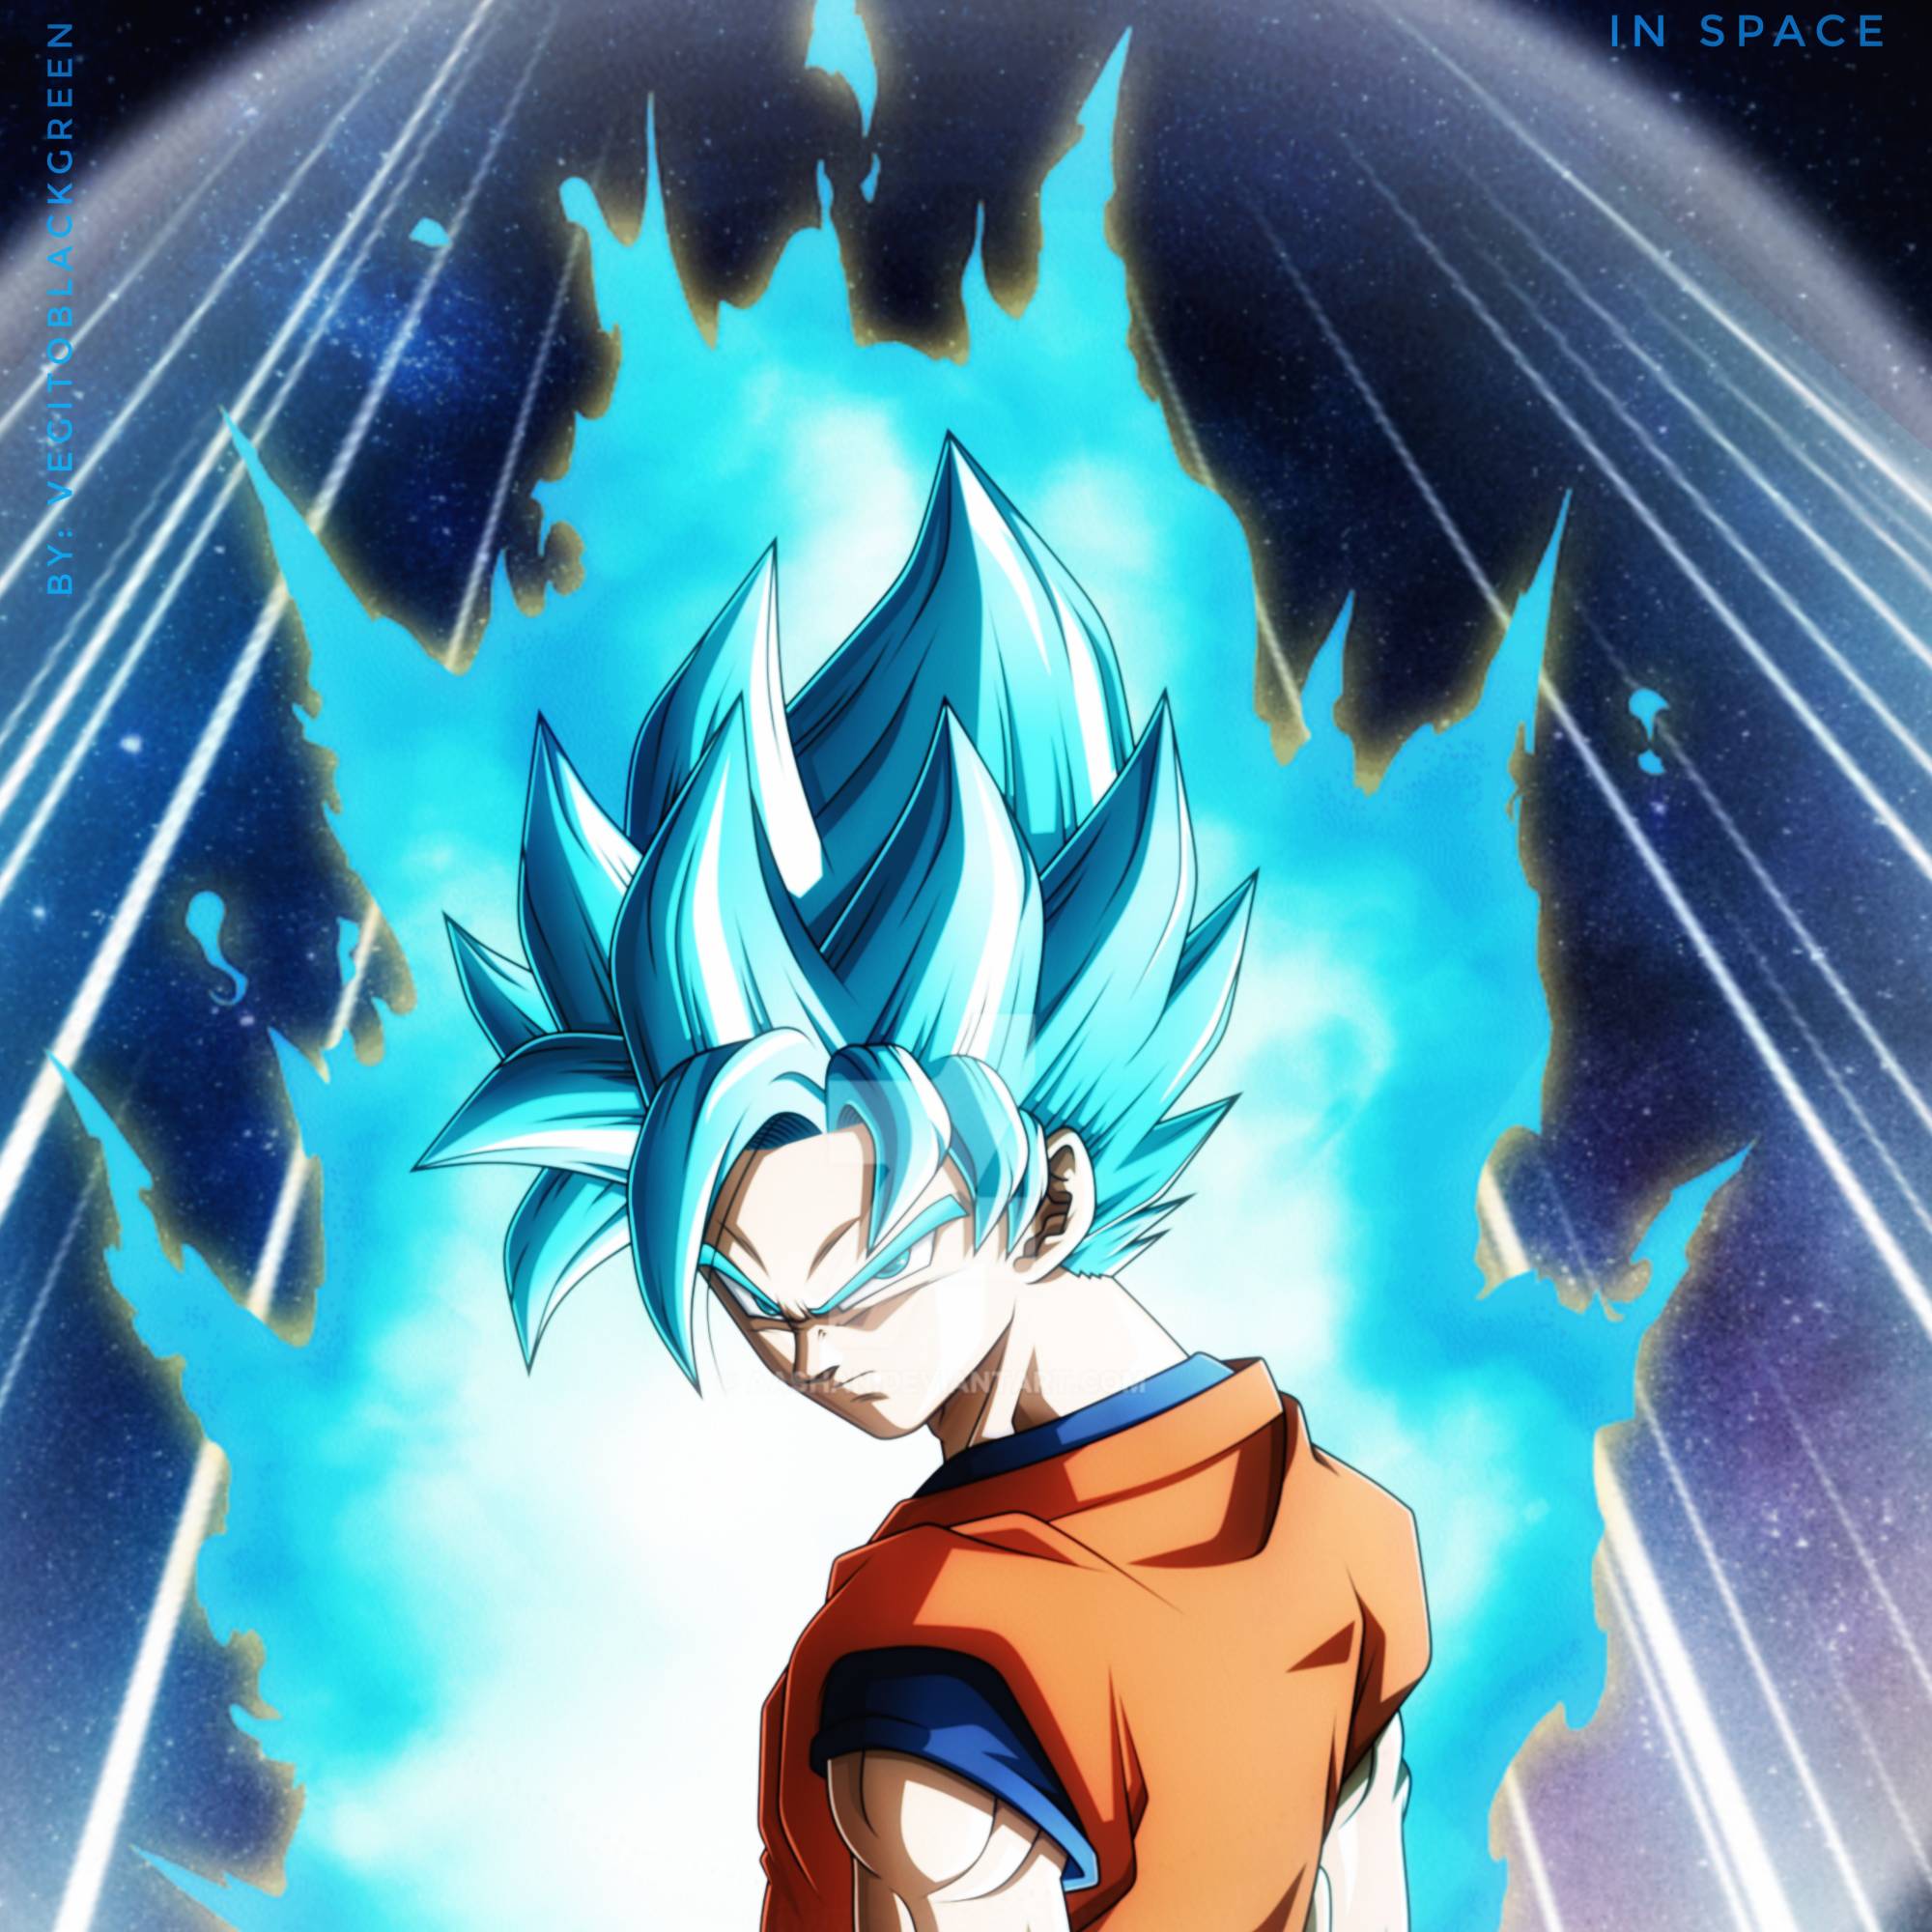 Super Saiyan 2 Goku with aura by vegitoblackgreen on DeviantArt